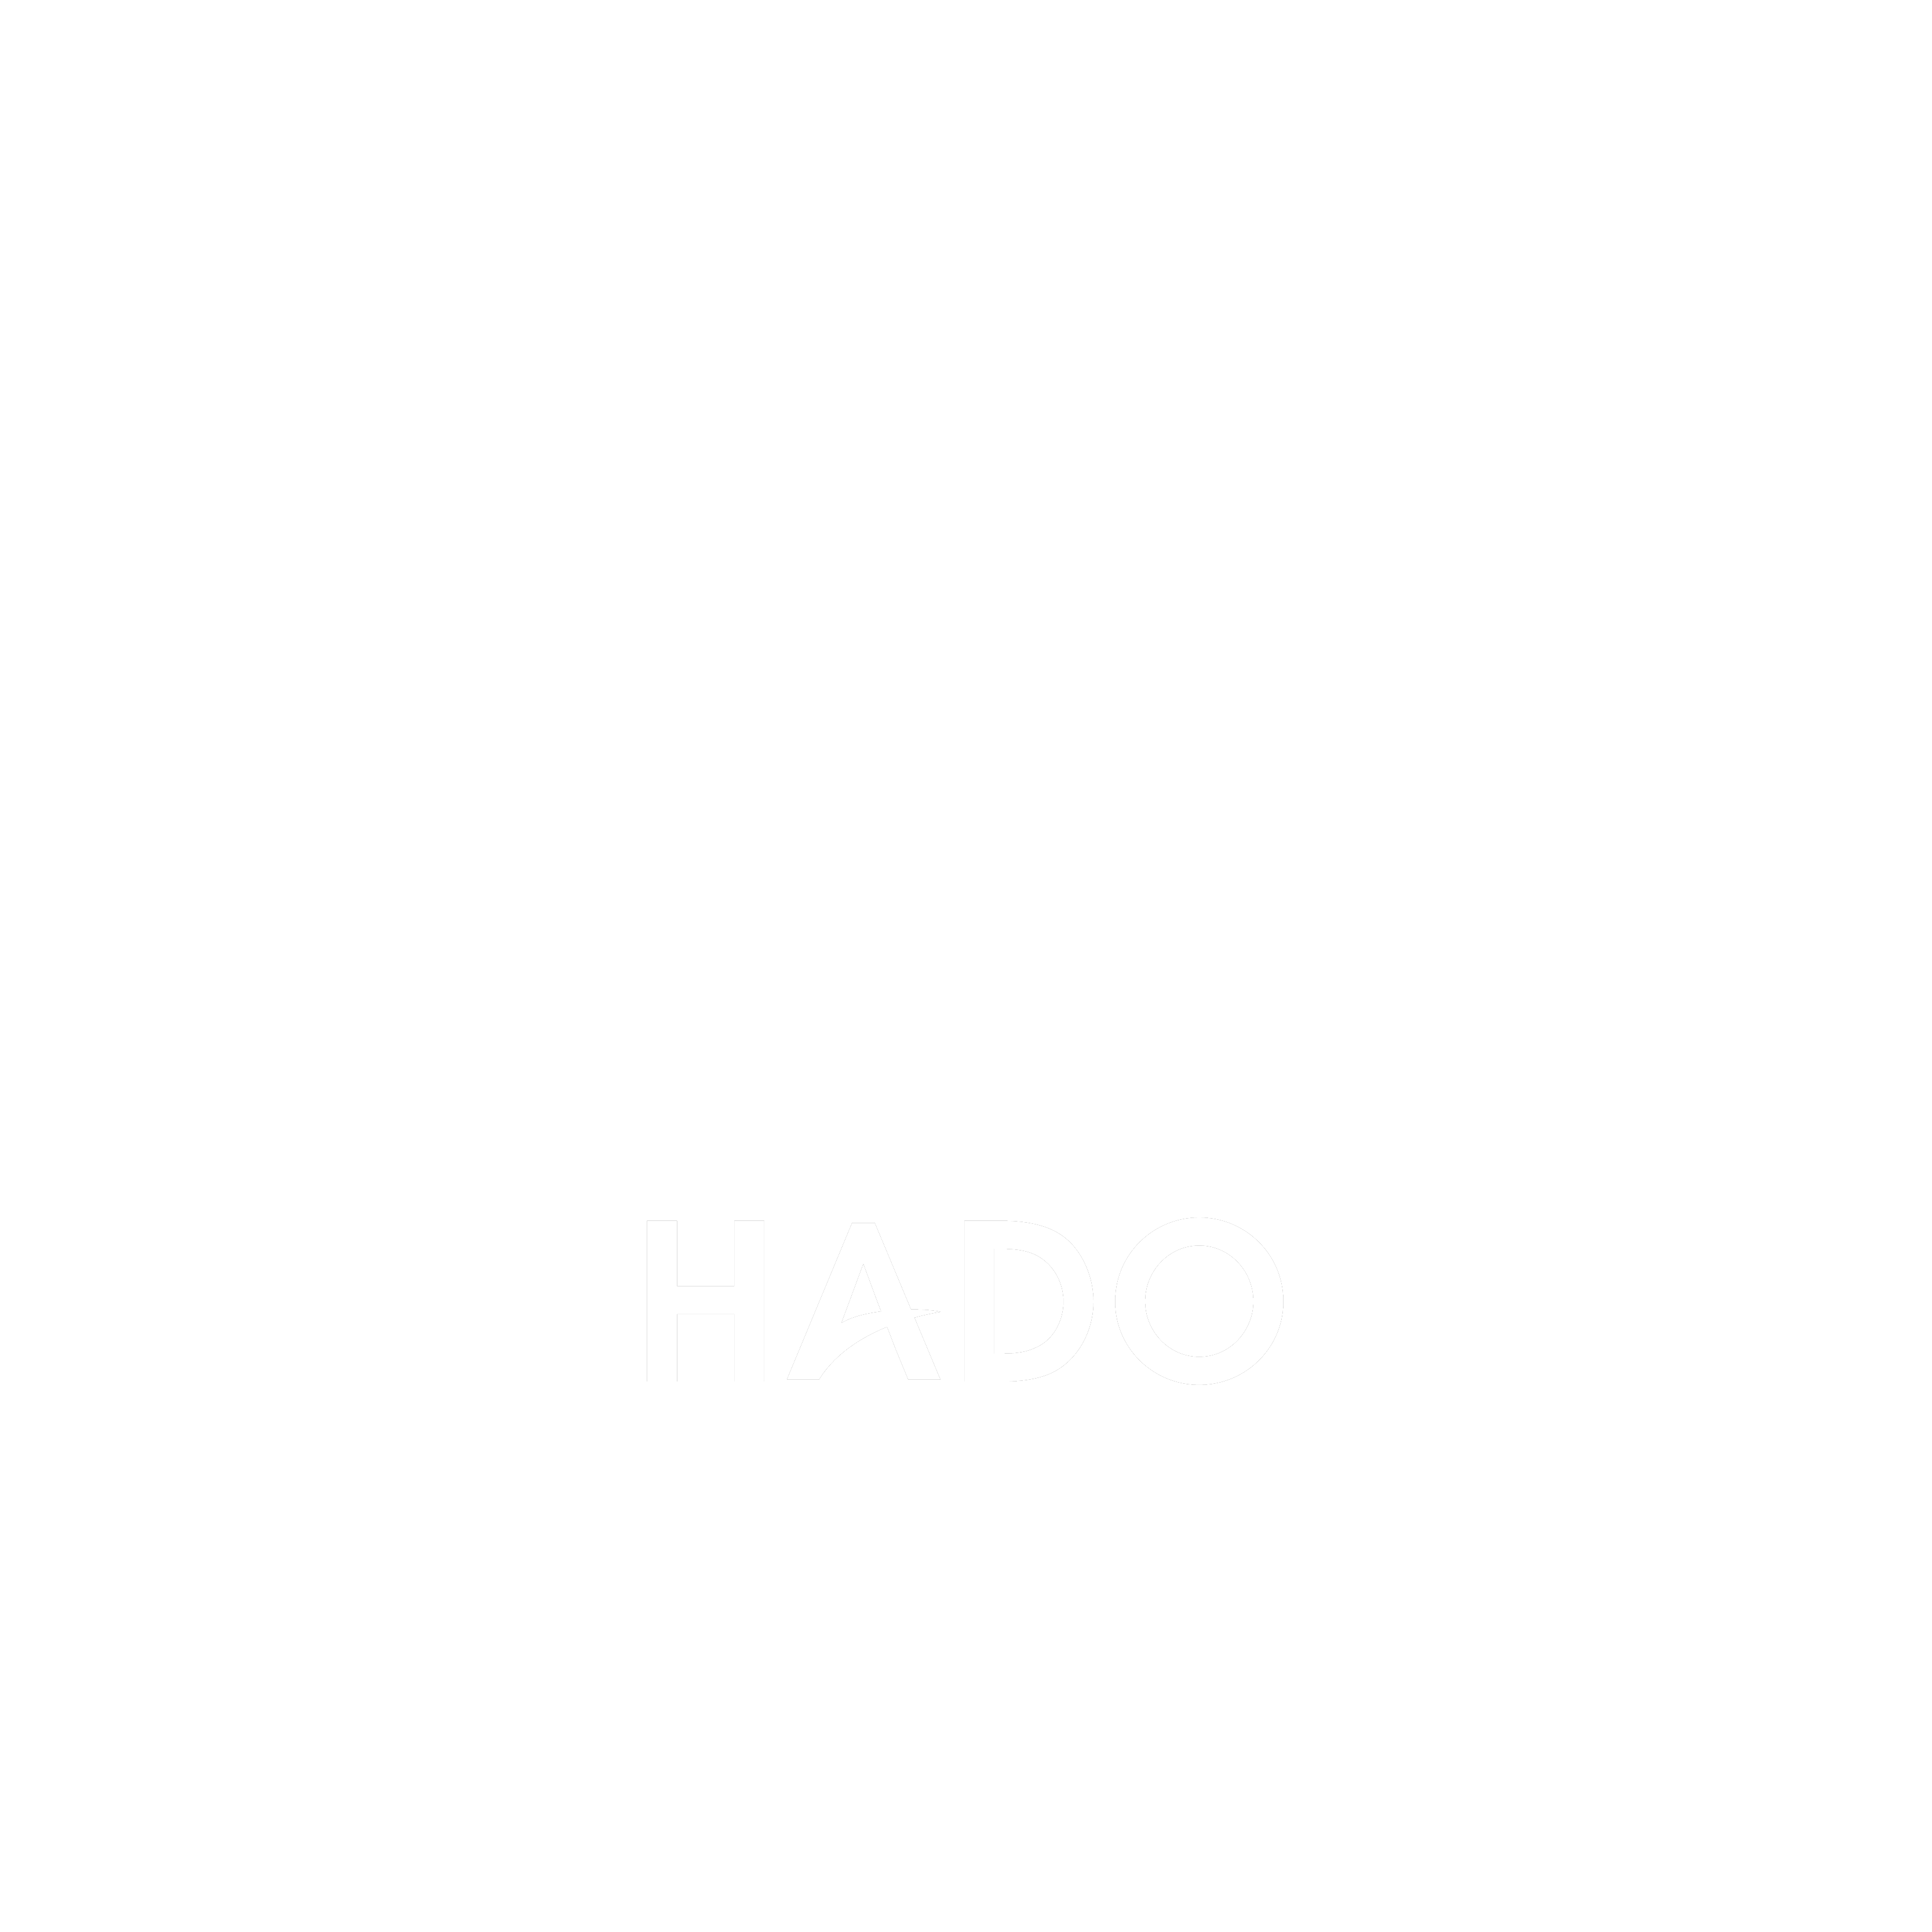 HADO WORLD CUP 2019